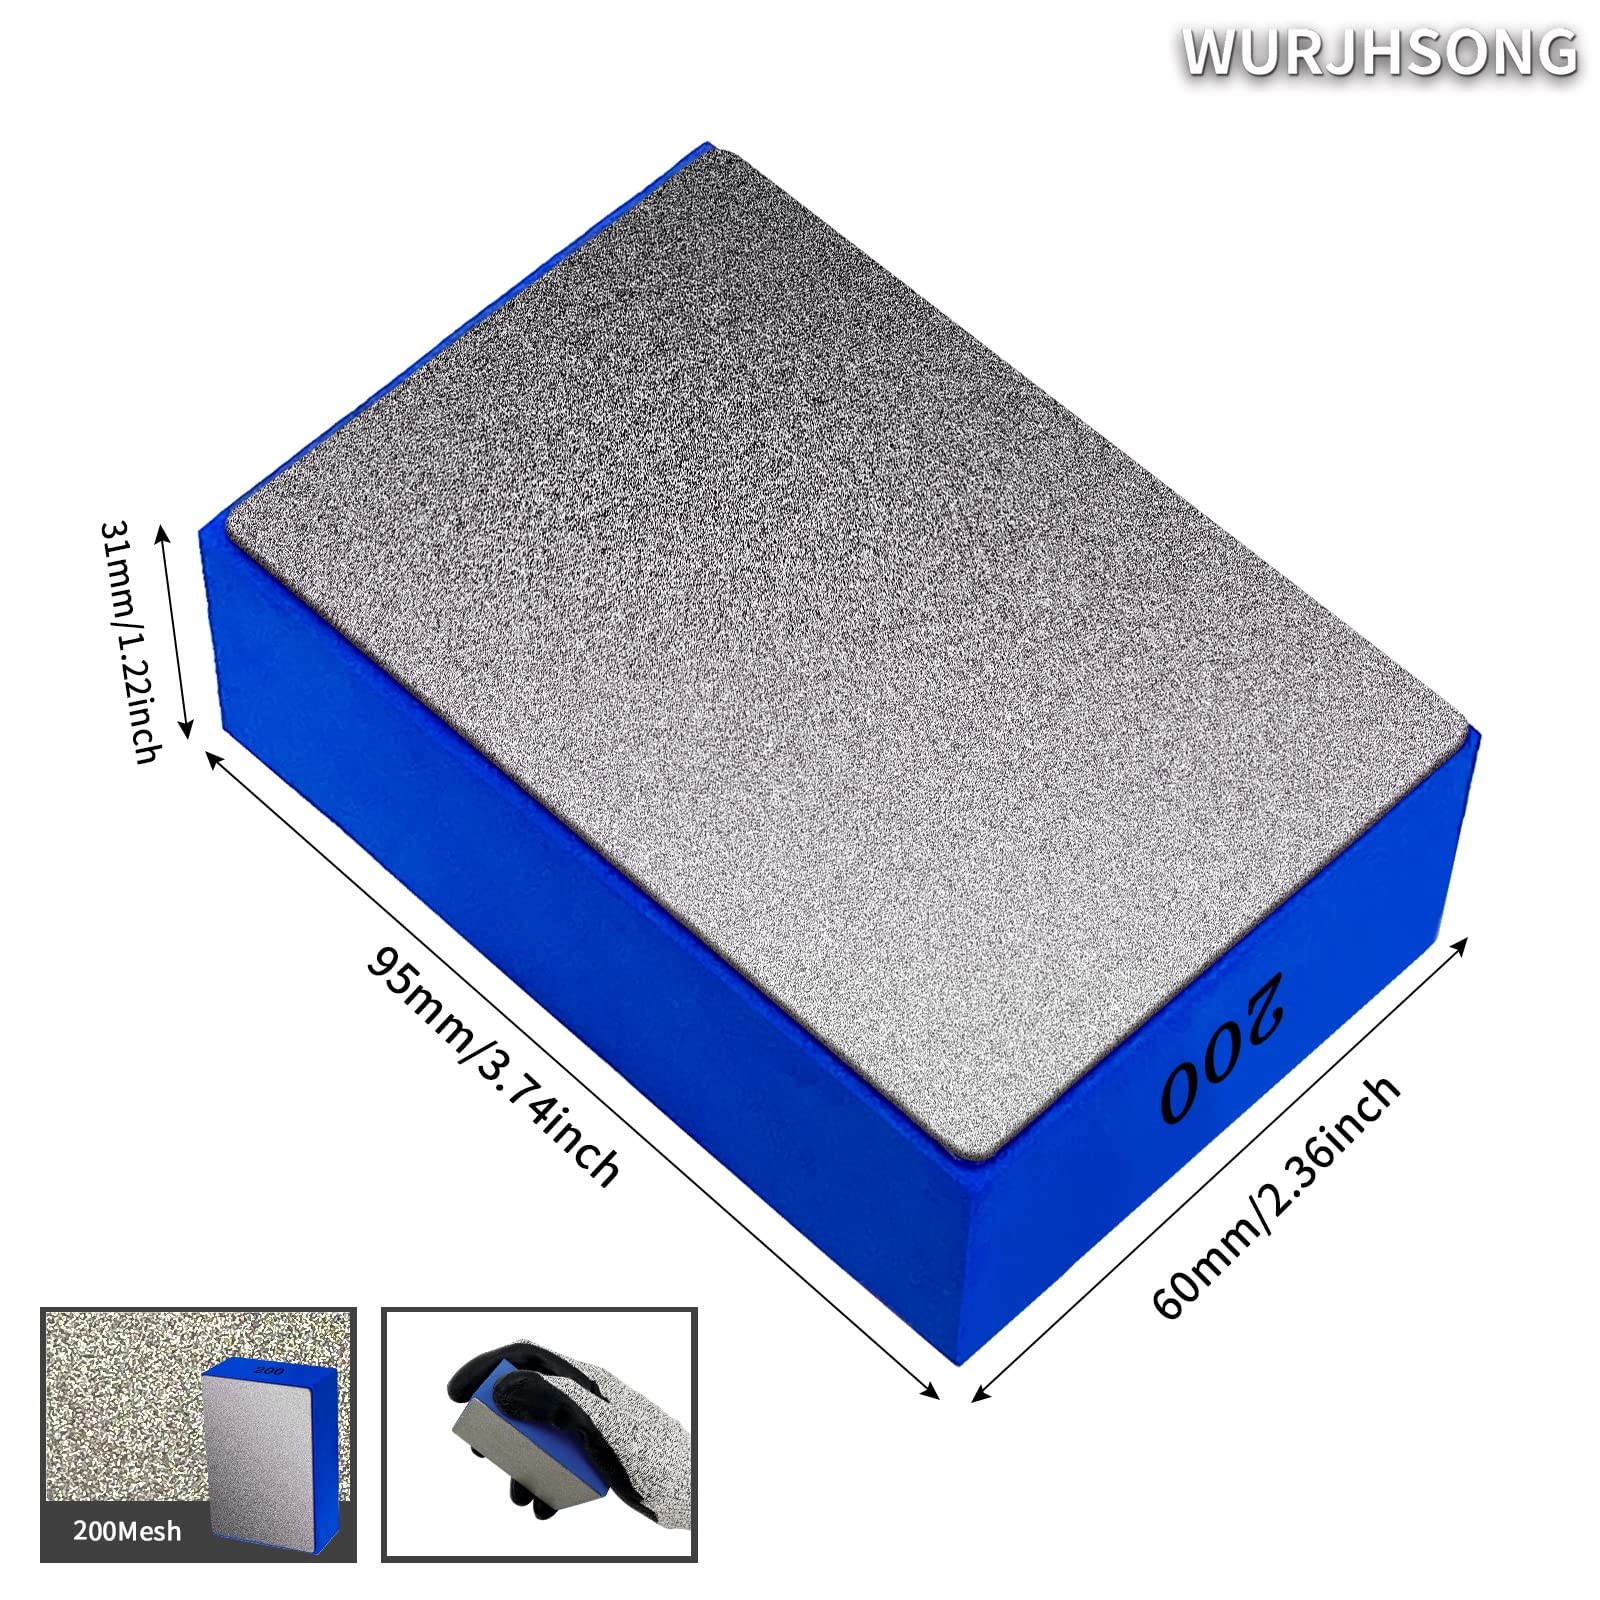 Diamond Hand Polishing Pads(4Pcs) Diamond Sanding Blocks Reusable Foam Sanding Blocks for Sanding Concrete Glass Stone Granite Marble Tile Stone Trimming Deburring (Full Sand 4PCS (Mixed))